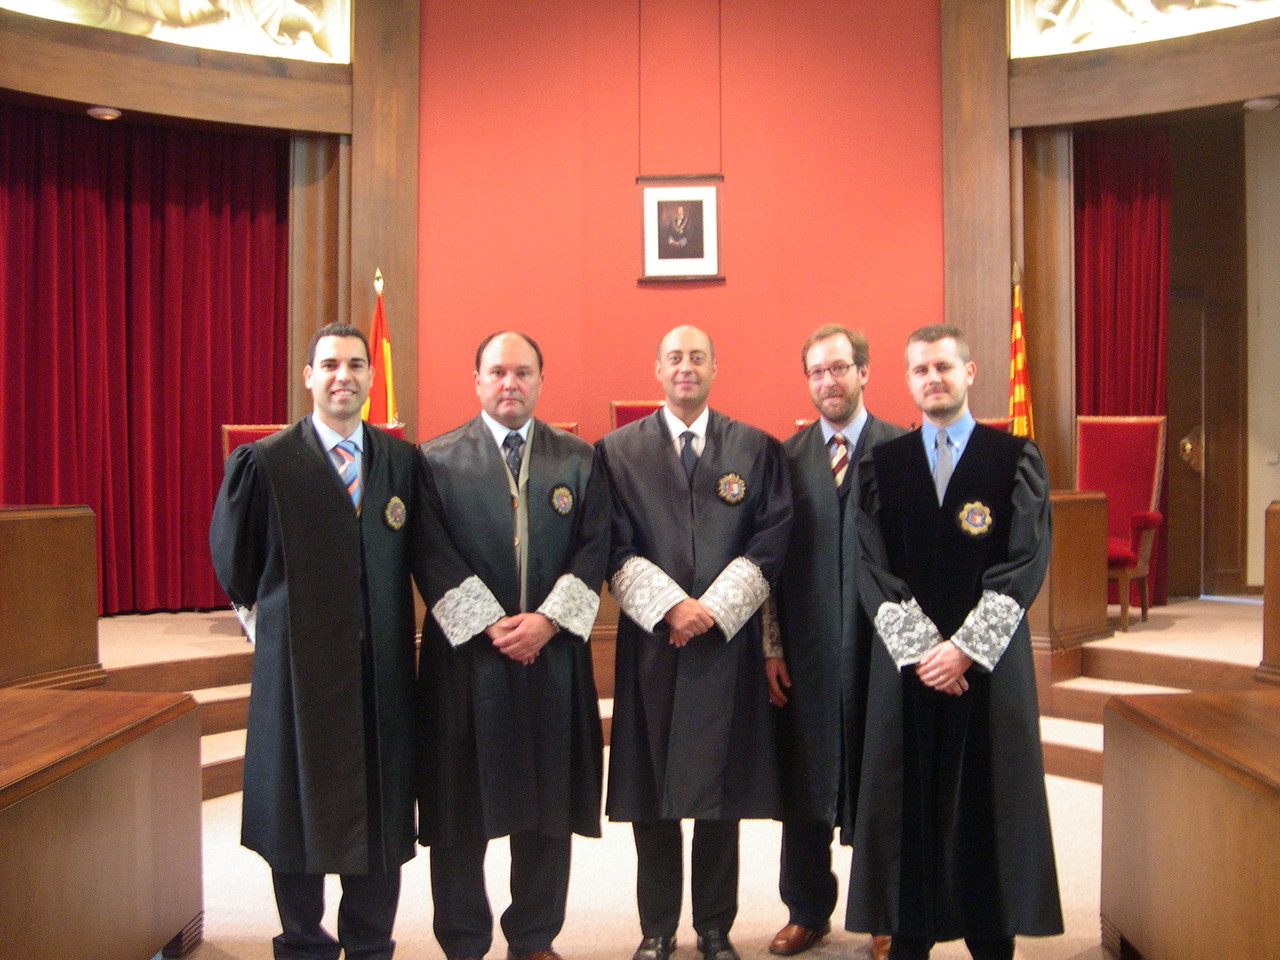 Magistrado suplente en la Audiencia Provincial de Barcelona (2005)